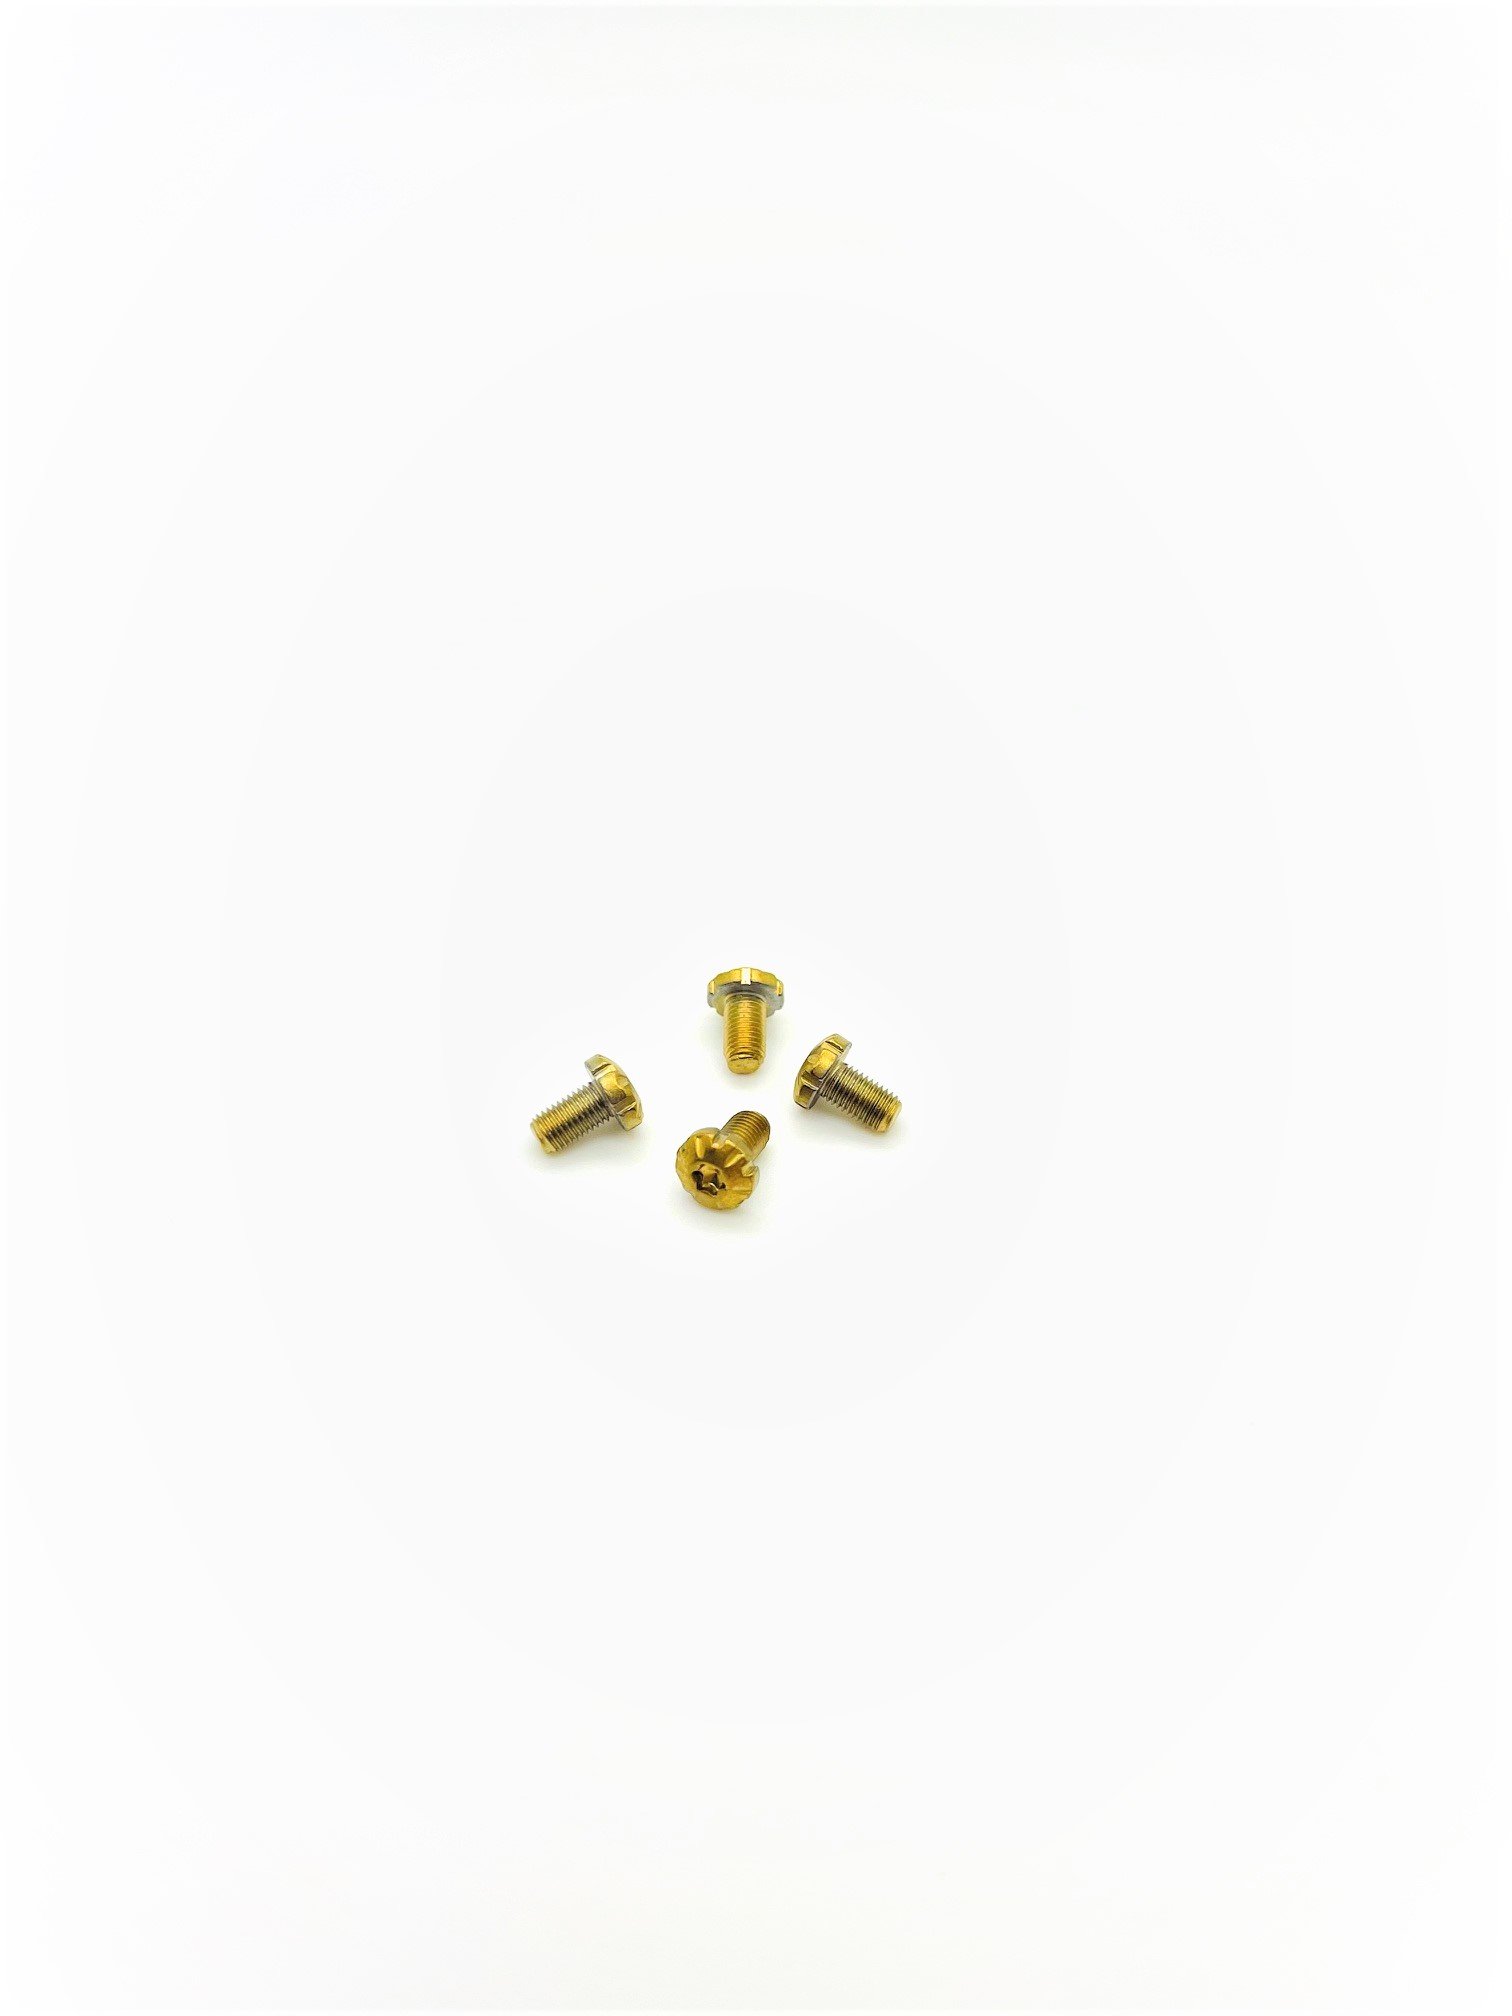 Stainless steel Torx golden 1911 grip screws x4